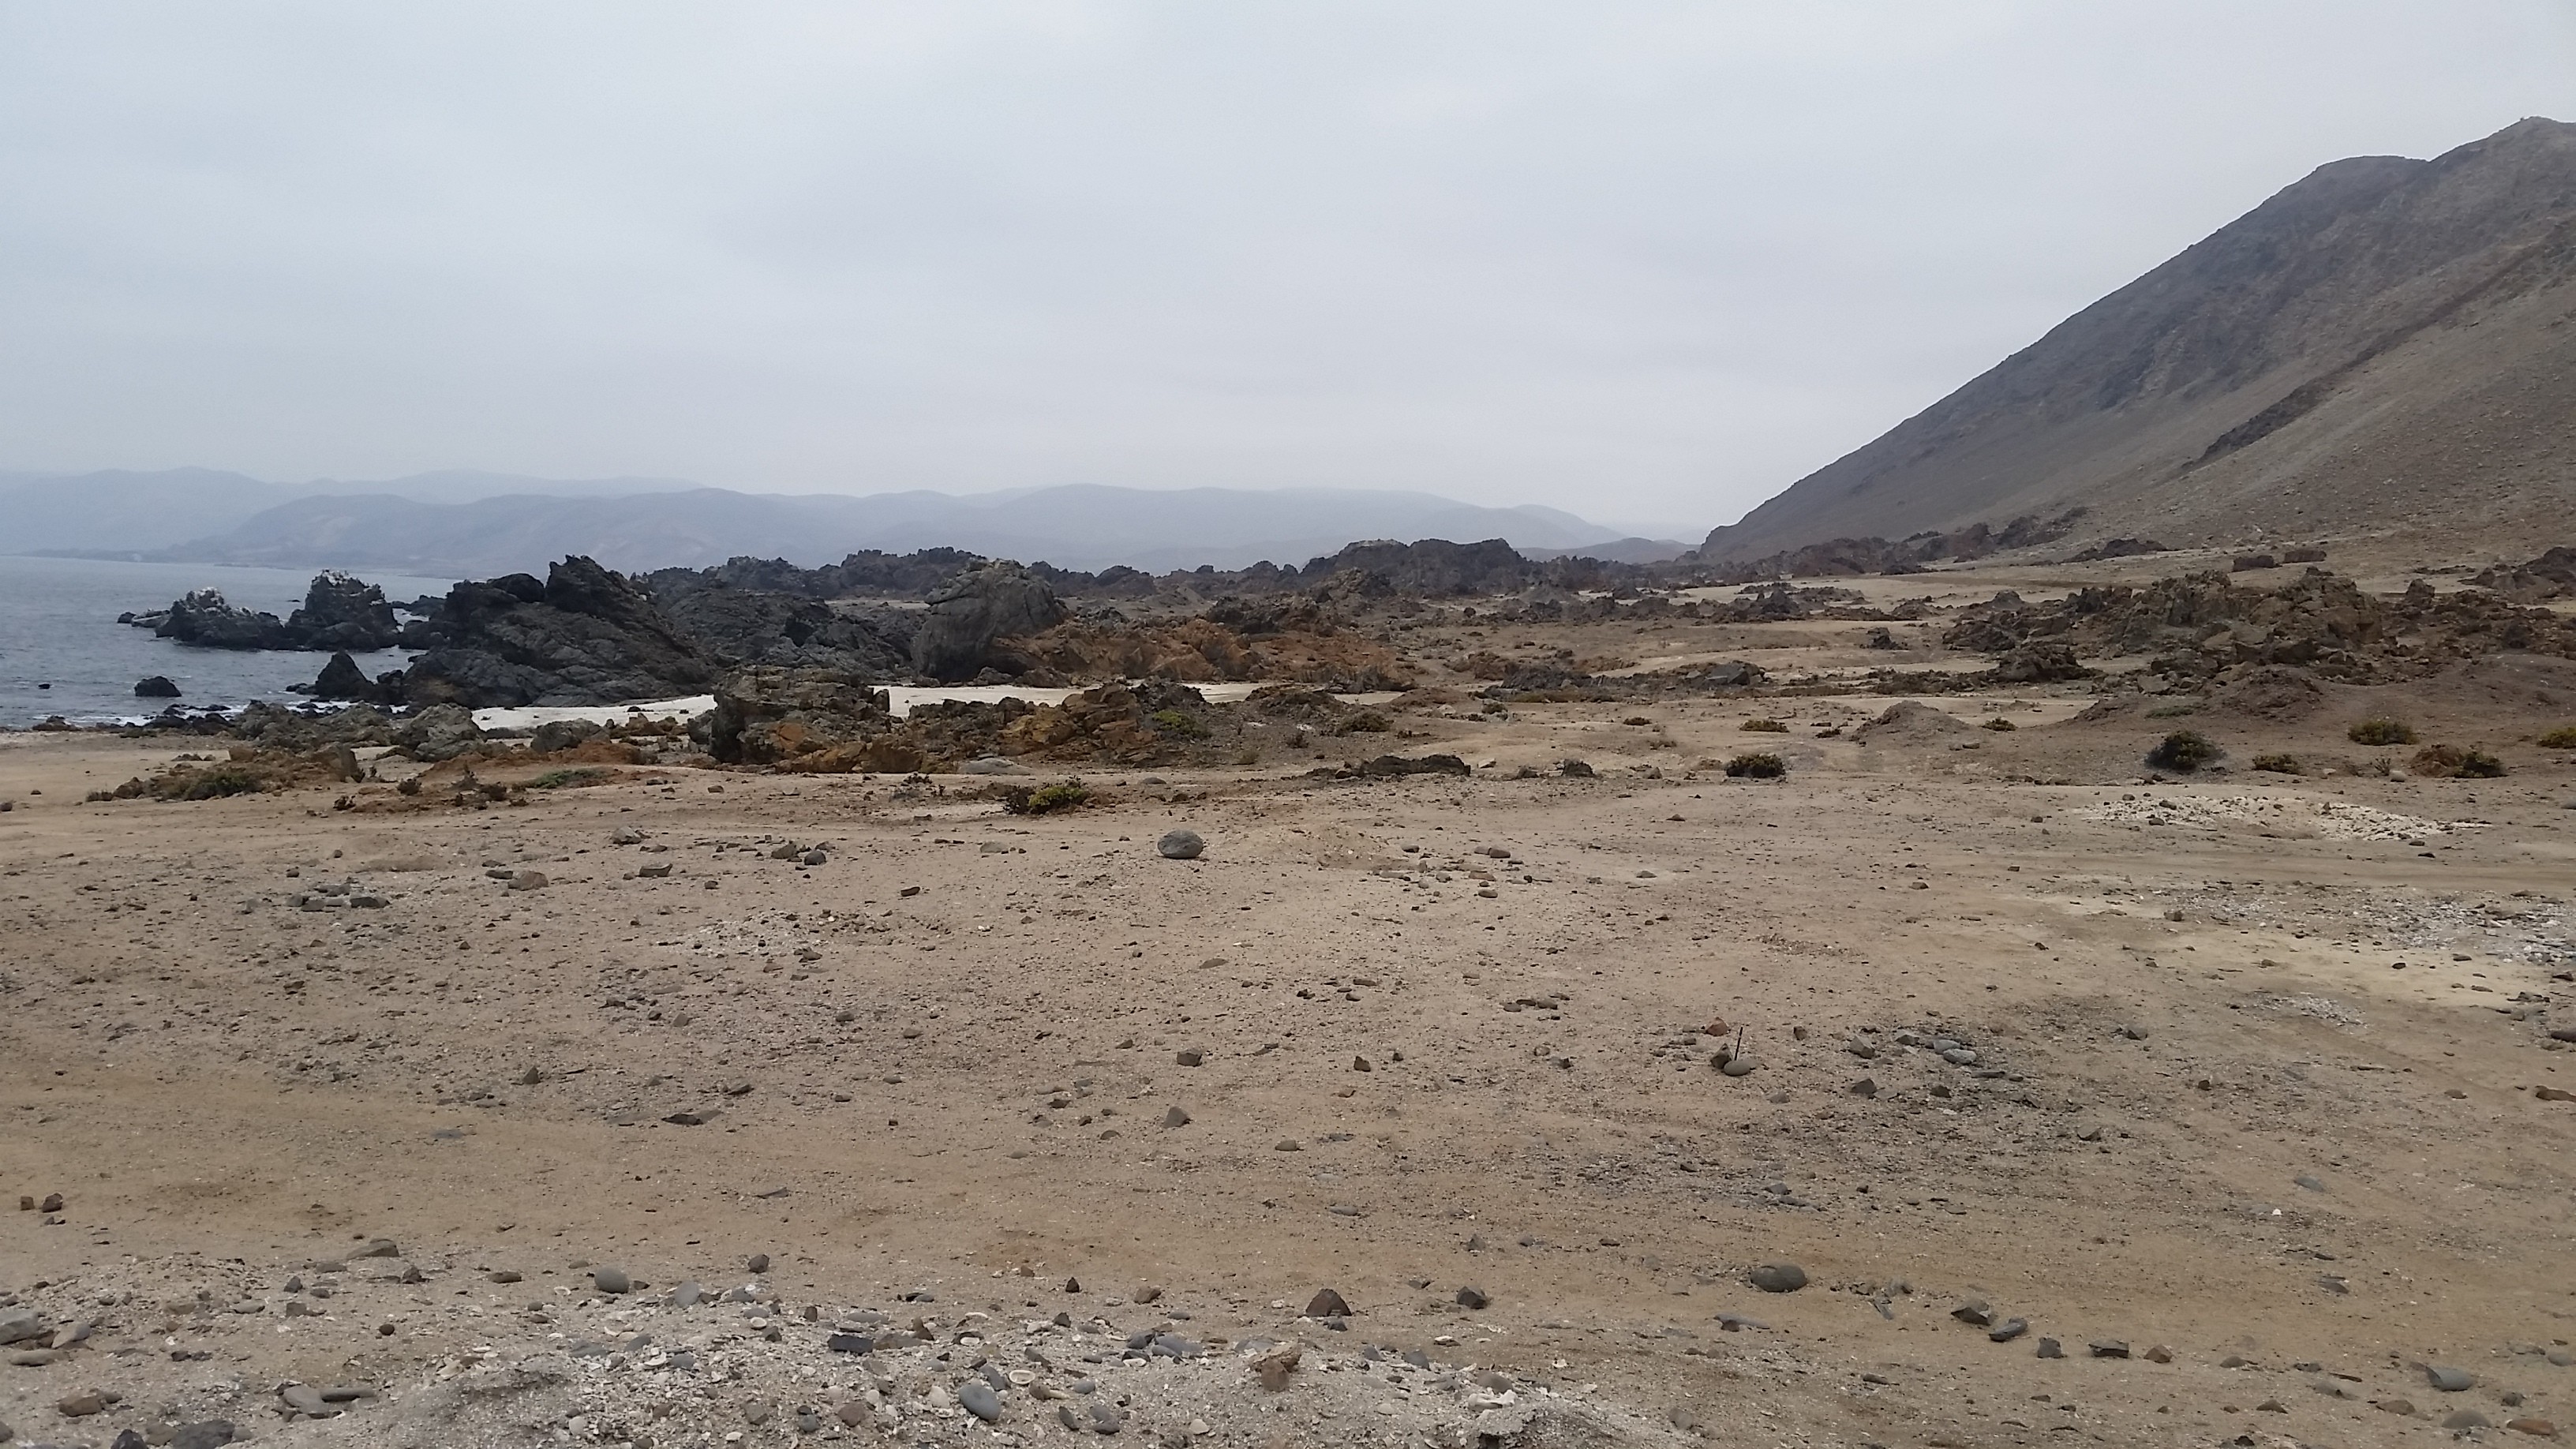 Costa rochosa escarpada com penhascos íngremes no Deserto do Atacama (Foto: Universidade de Southampton)